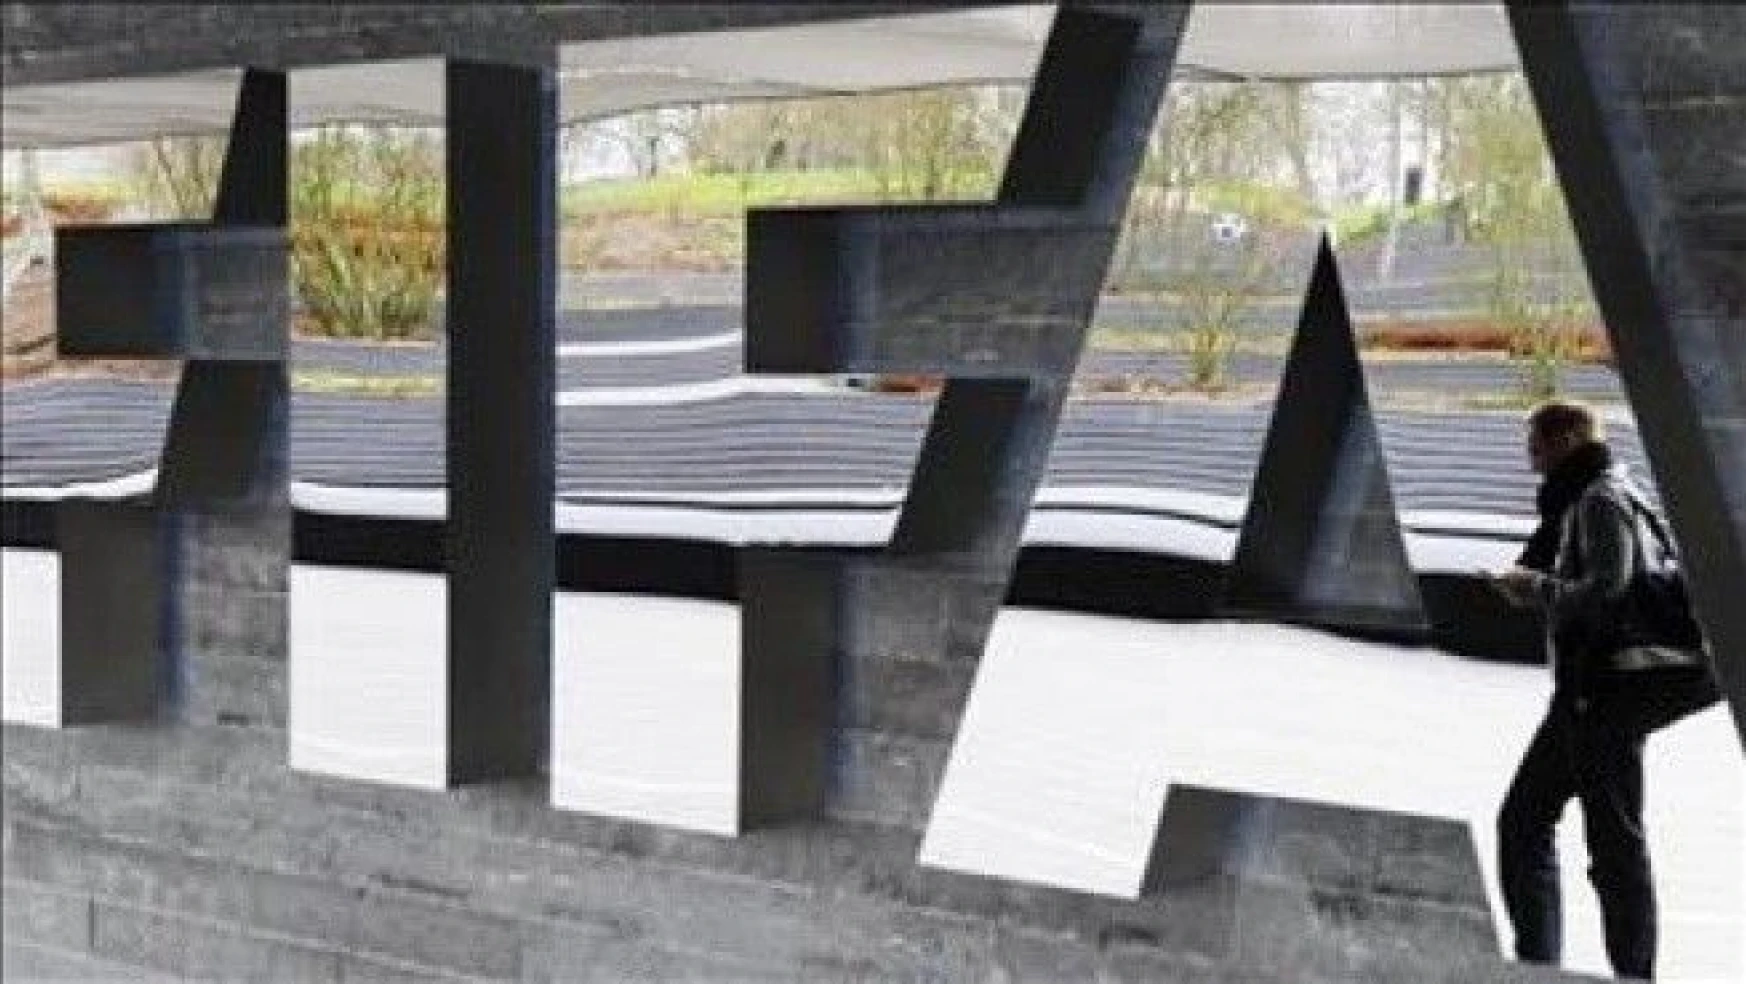 '16 FIFA yetkilisi hakkında soruşturma açıldı'